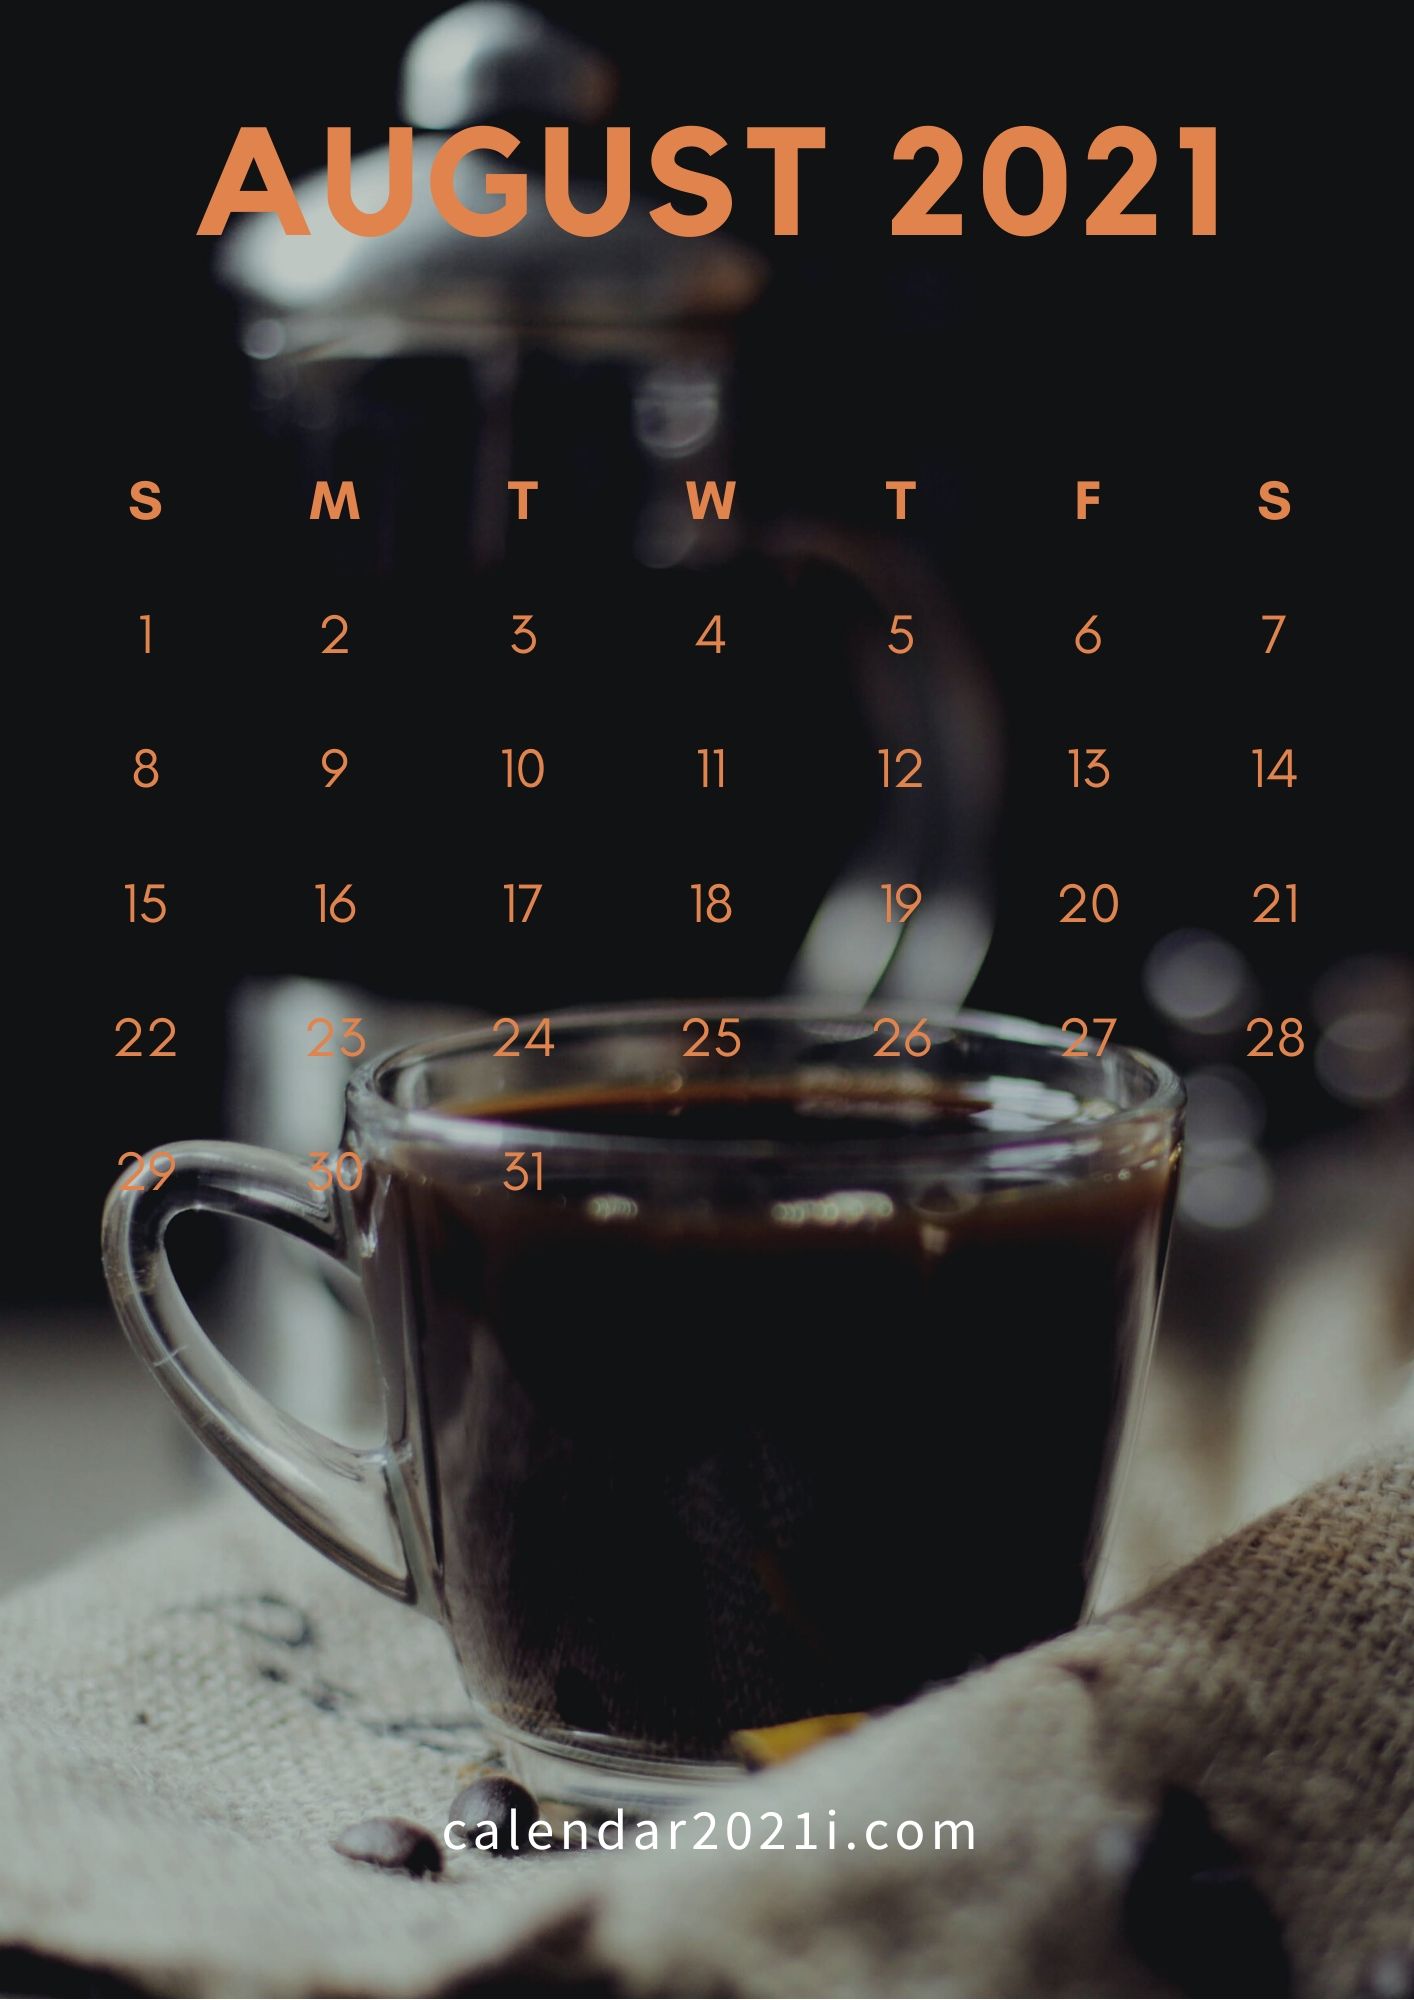 August 2021 iPhone Calendar Wallpaper